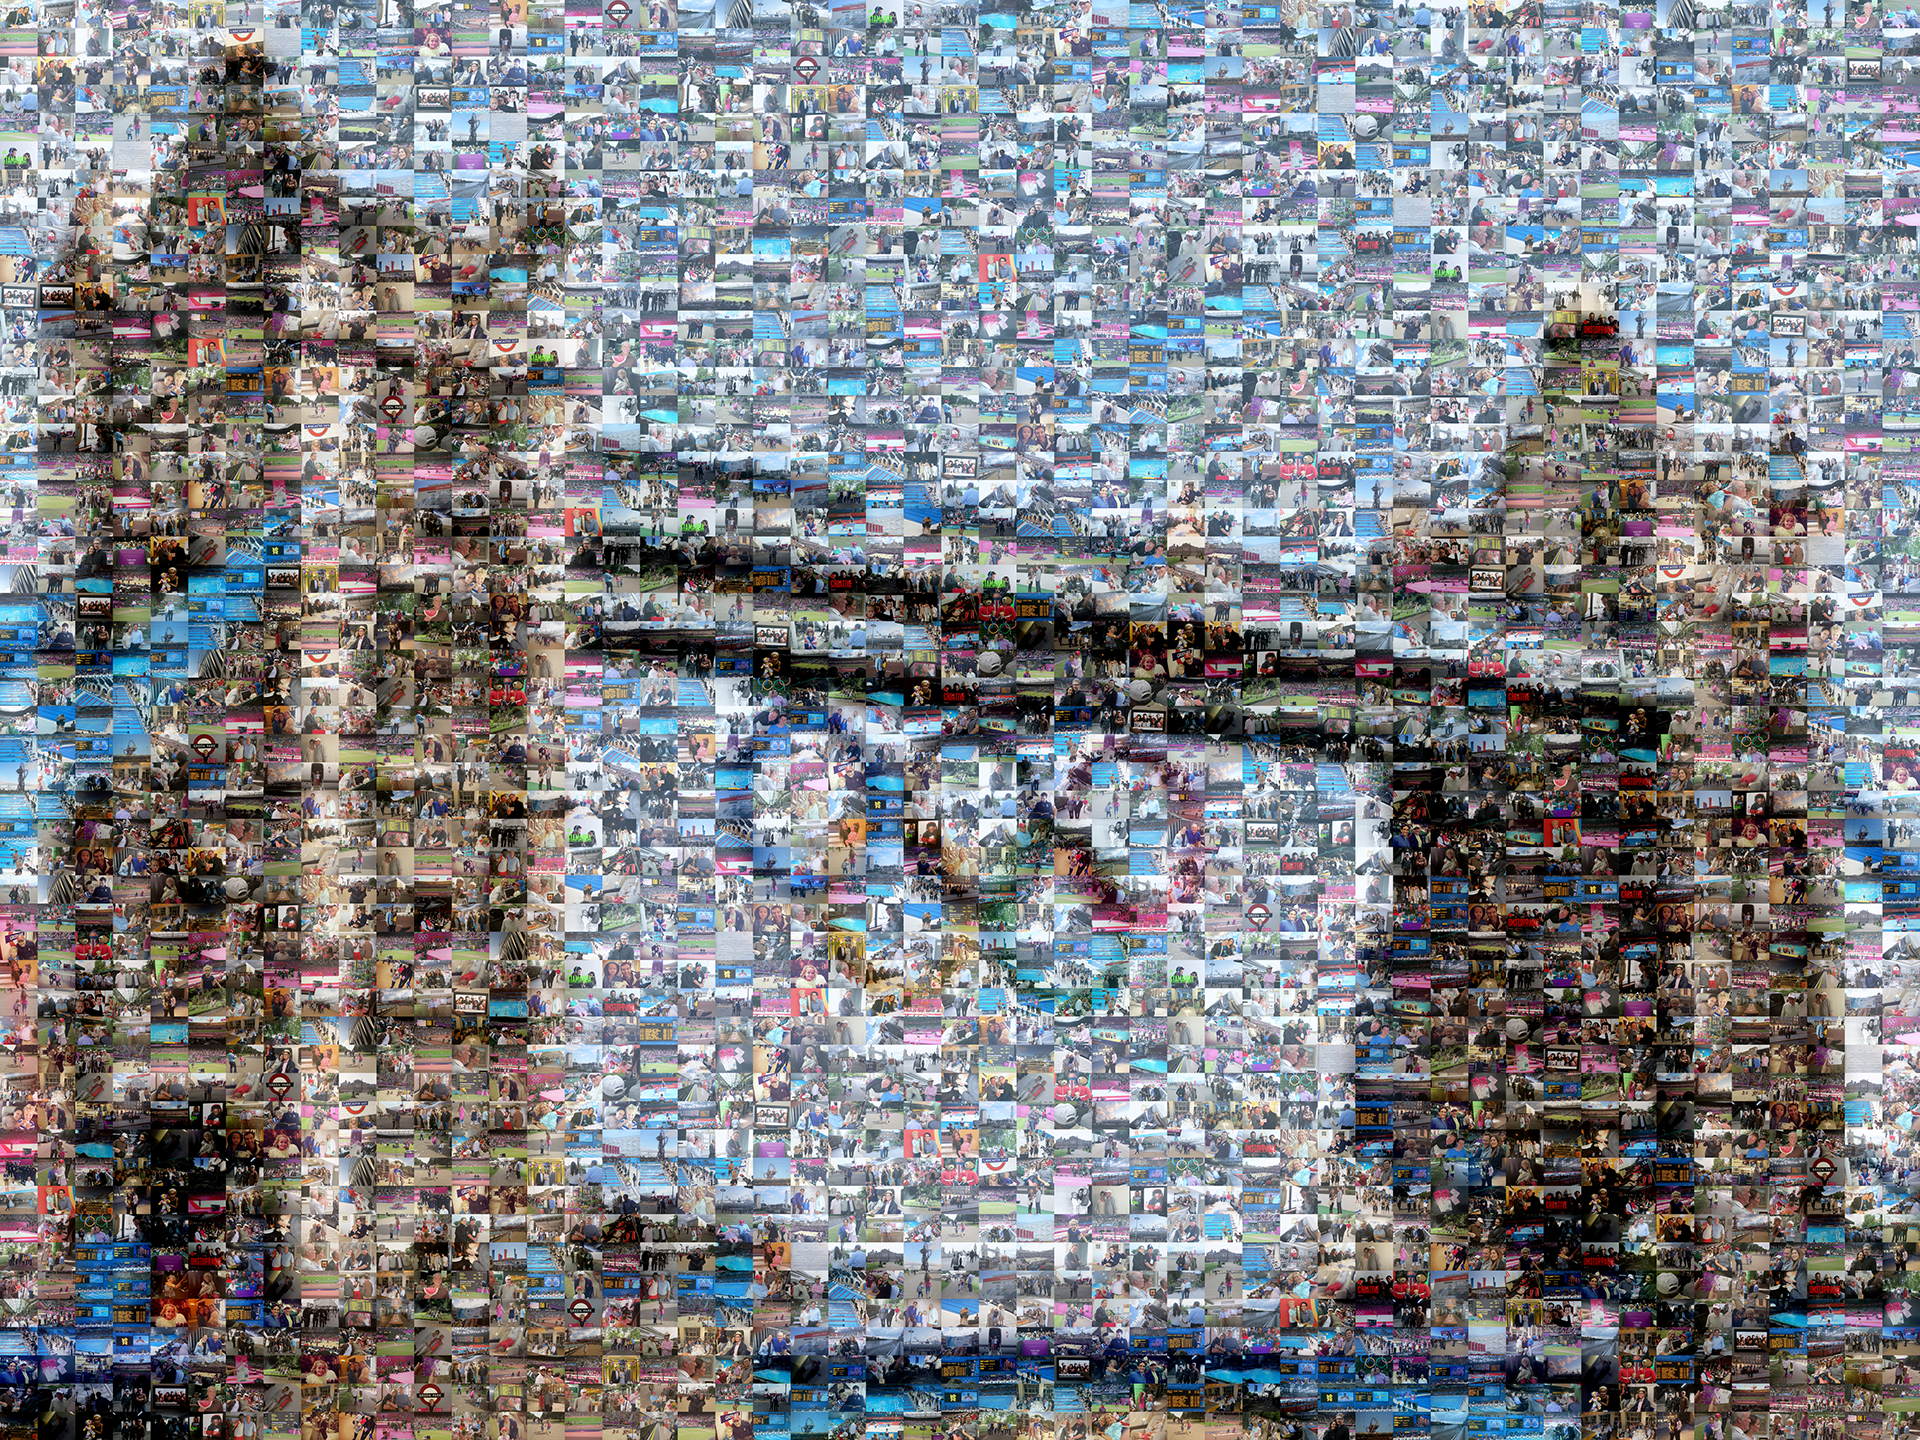 photo mosaic created using 275 community photos